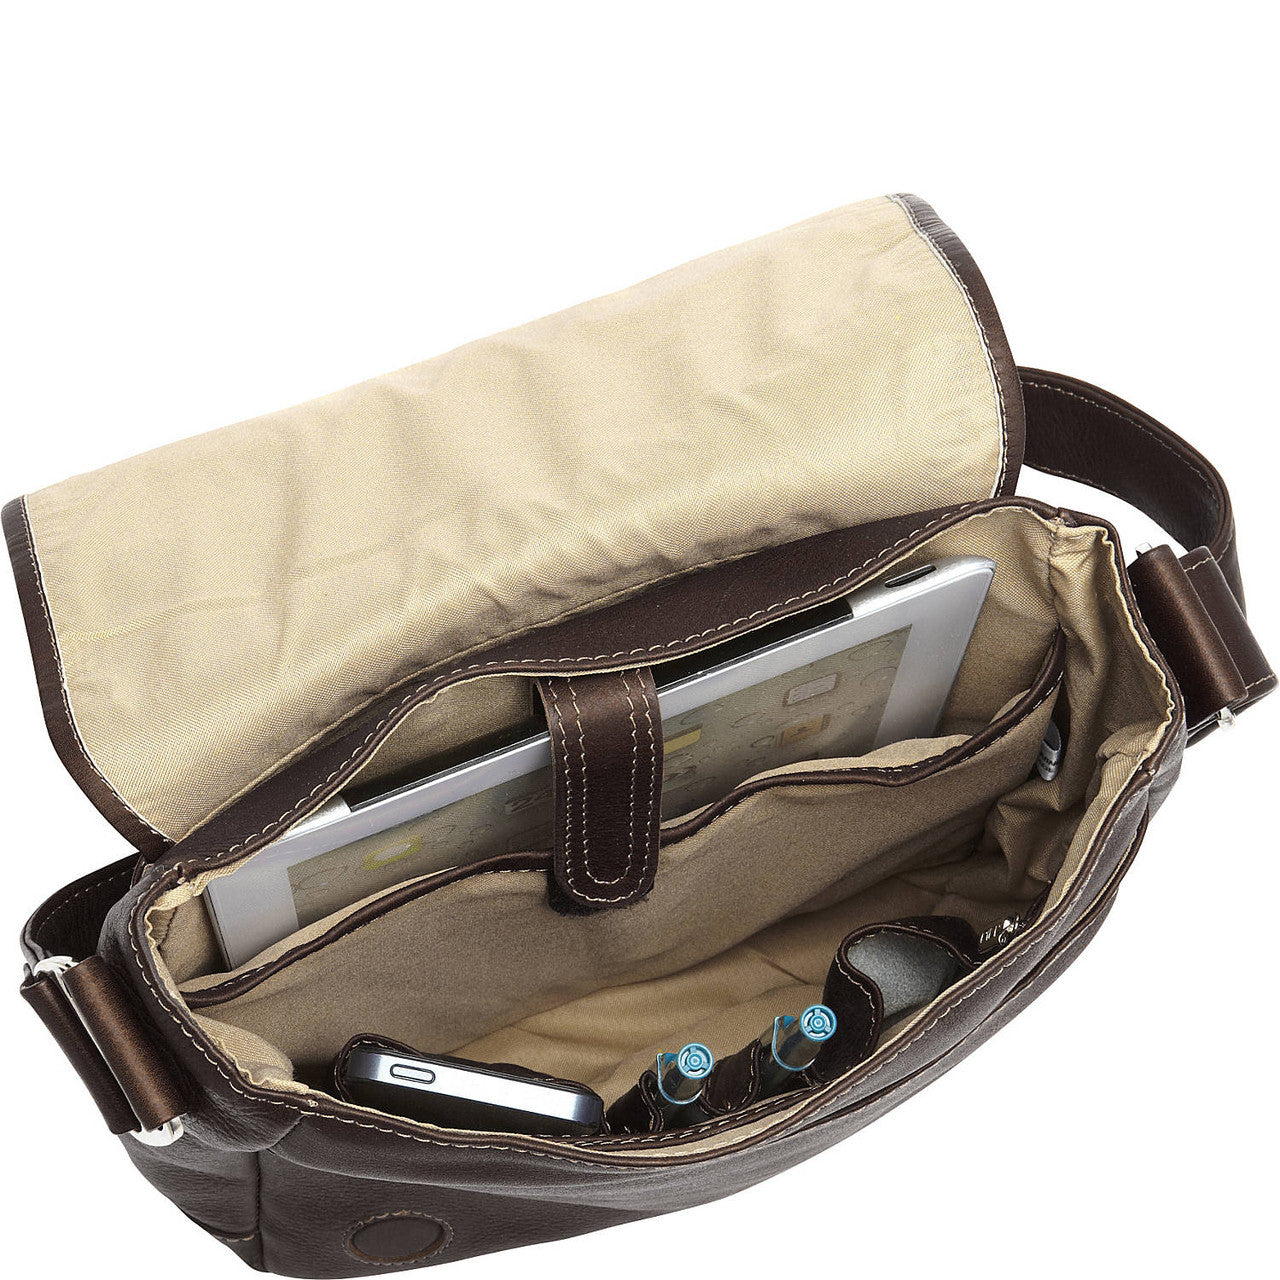 iPad/Tablet Shoulder Bag - Leather Loom